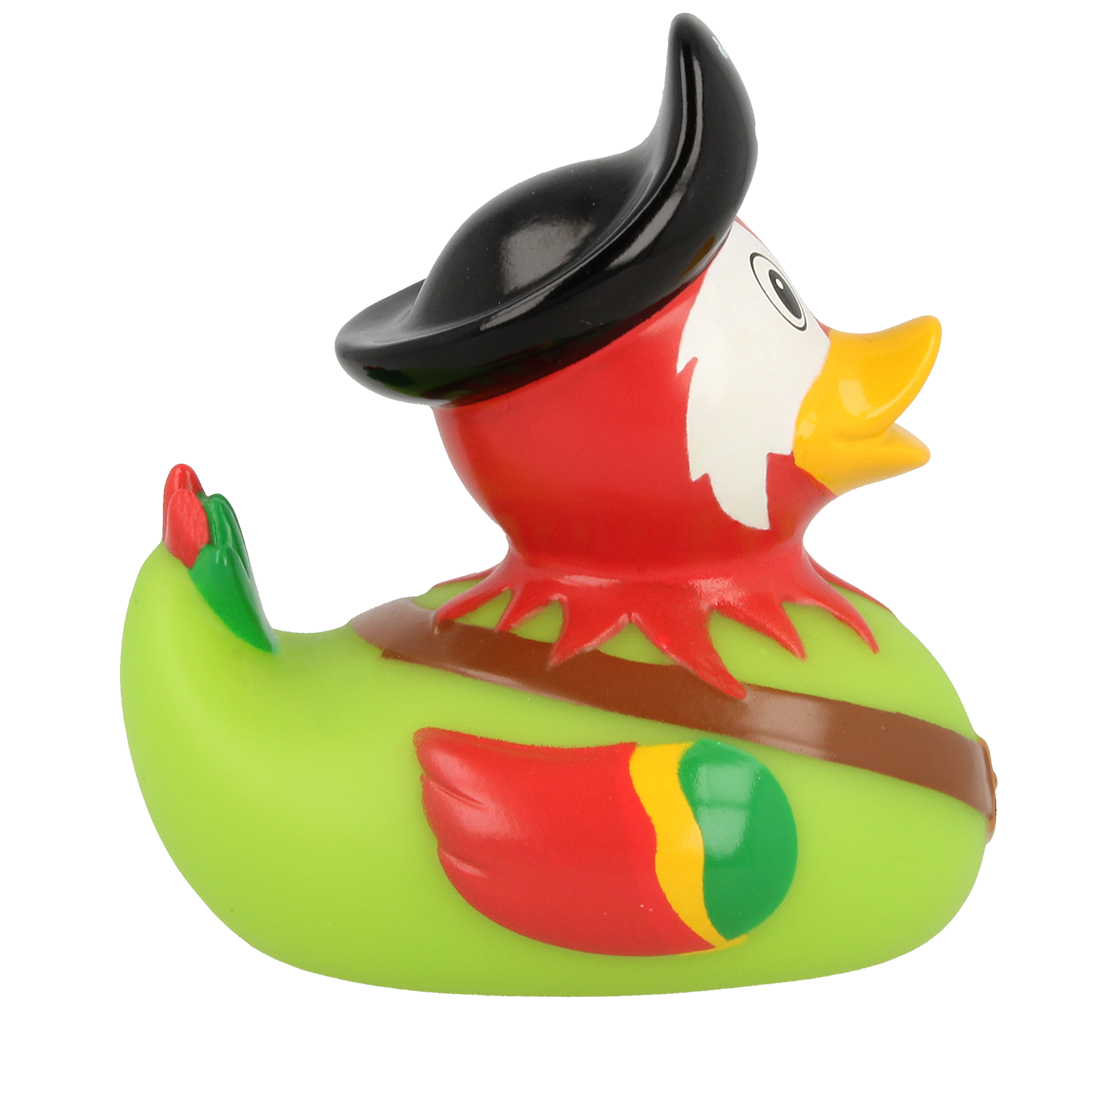 Canard Pirate Perroquet